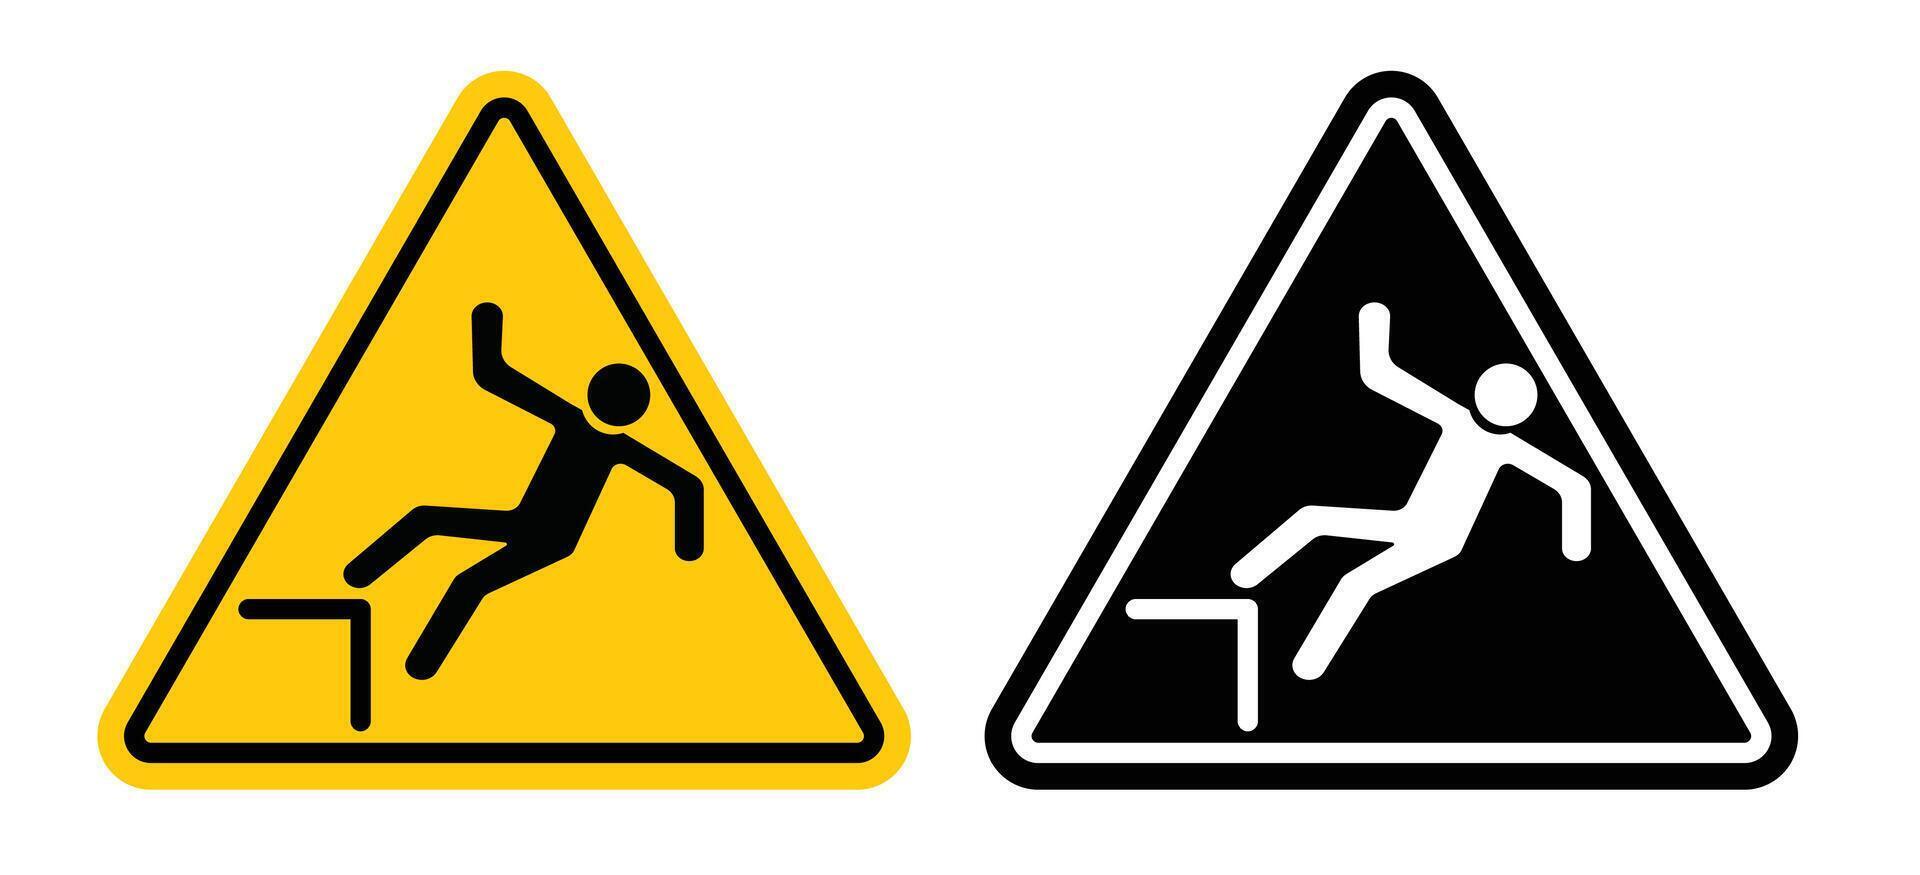 Slip Warning  sign vector